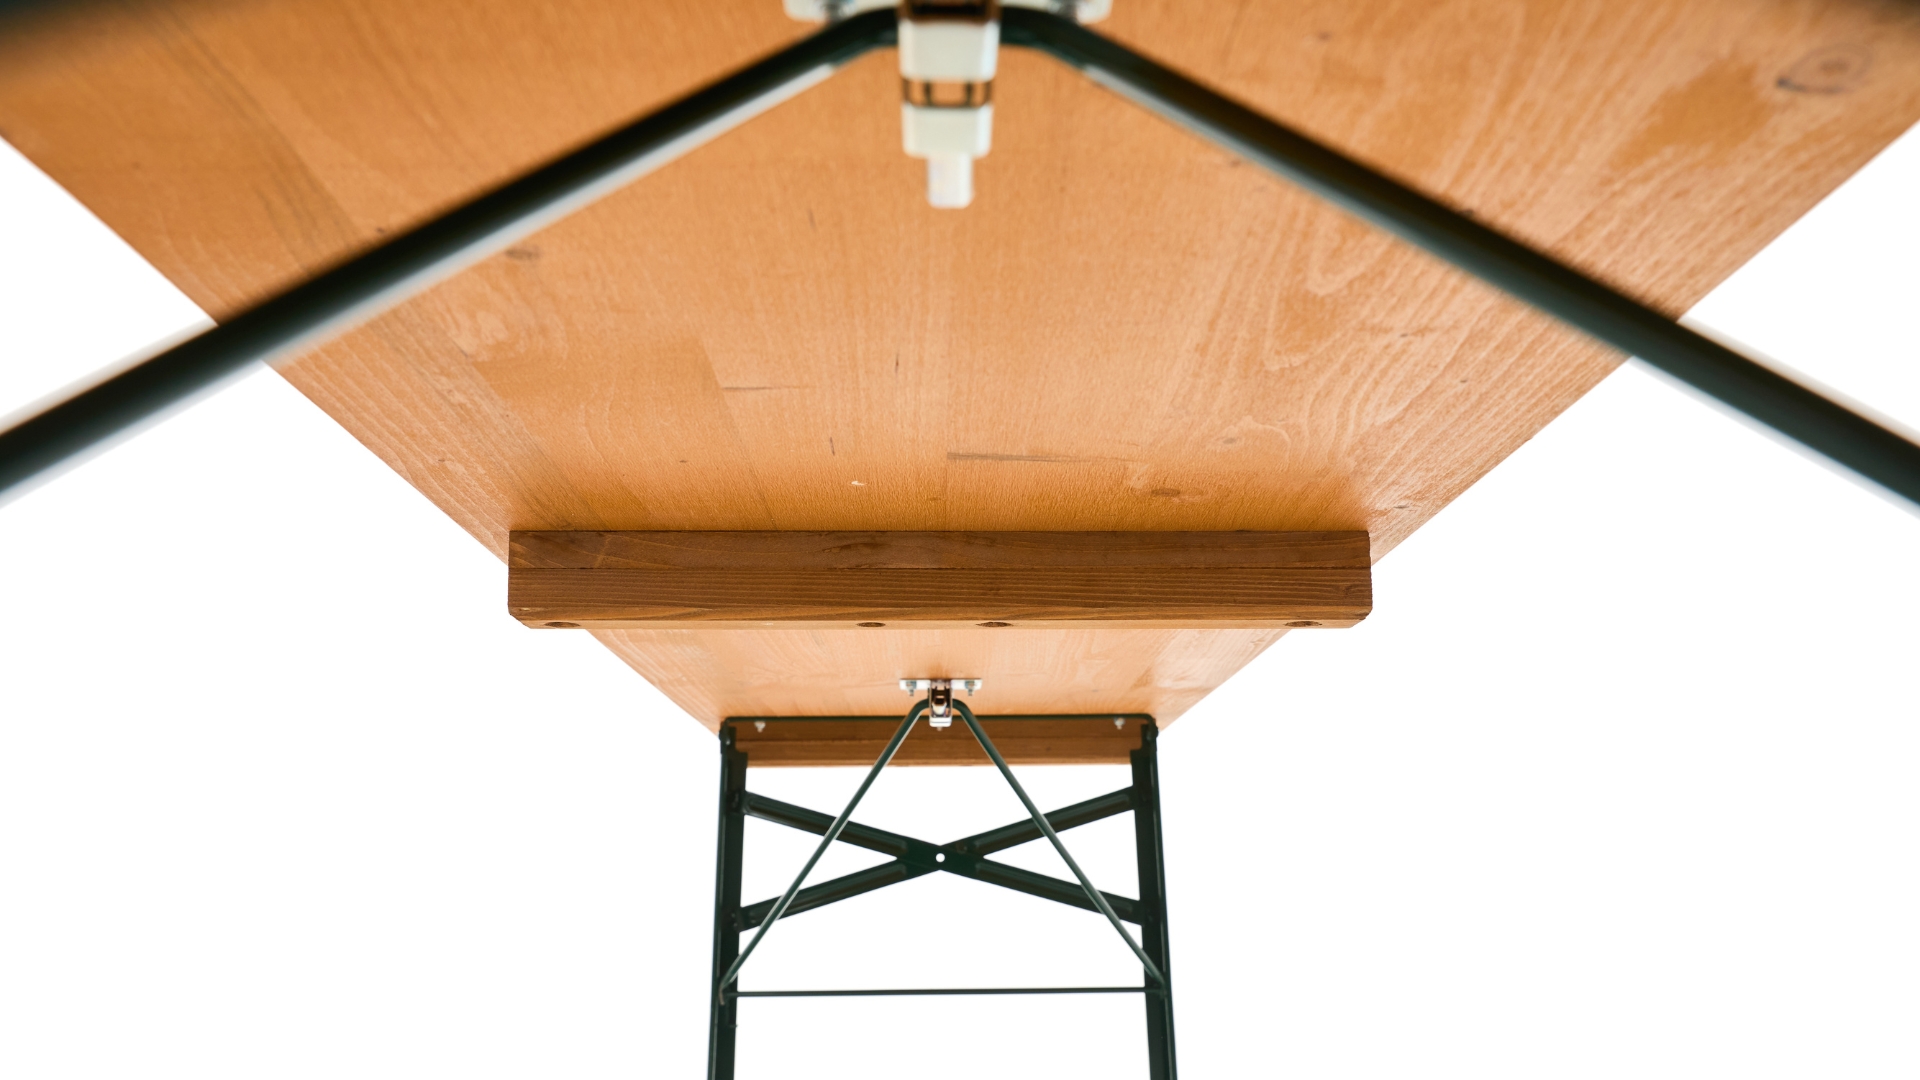 Ansicht der Biertischgarnitur von unten mit dem hervorgehobenen dritten Stapelholz. Es vermeidet ein Zerkratzen der Garnitur beim Stapeln.